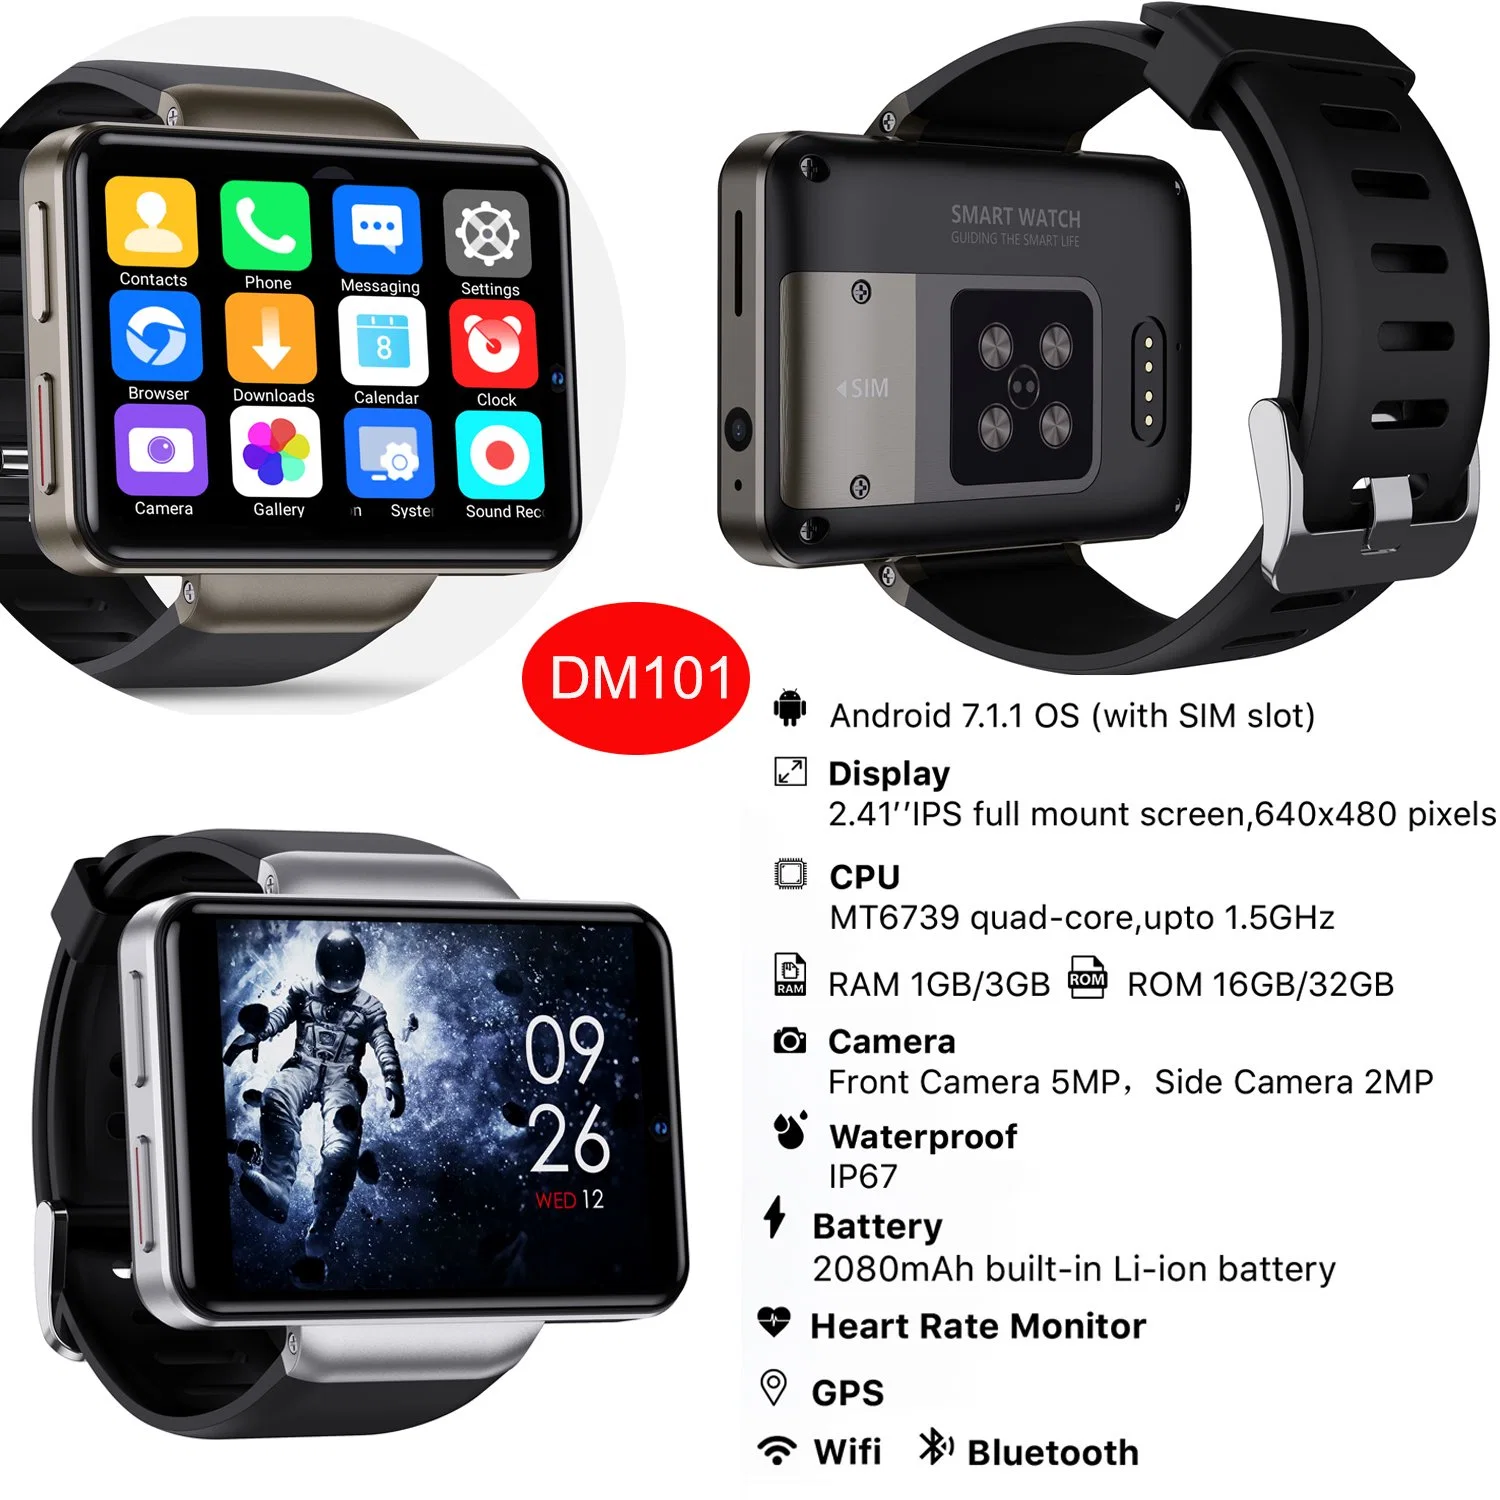 Nouveau Smartwatch étanches IP67 2.41pouces GPS Android Smart Watch téléphone mobile 4G avec WiFi d'appel vidéo Moniteur de fréquence cardiaque DM101